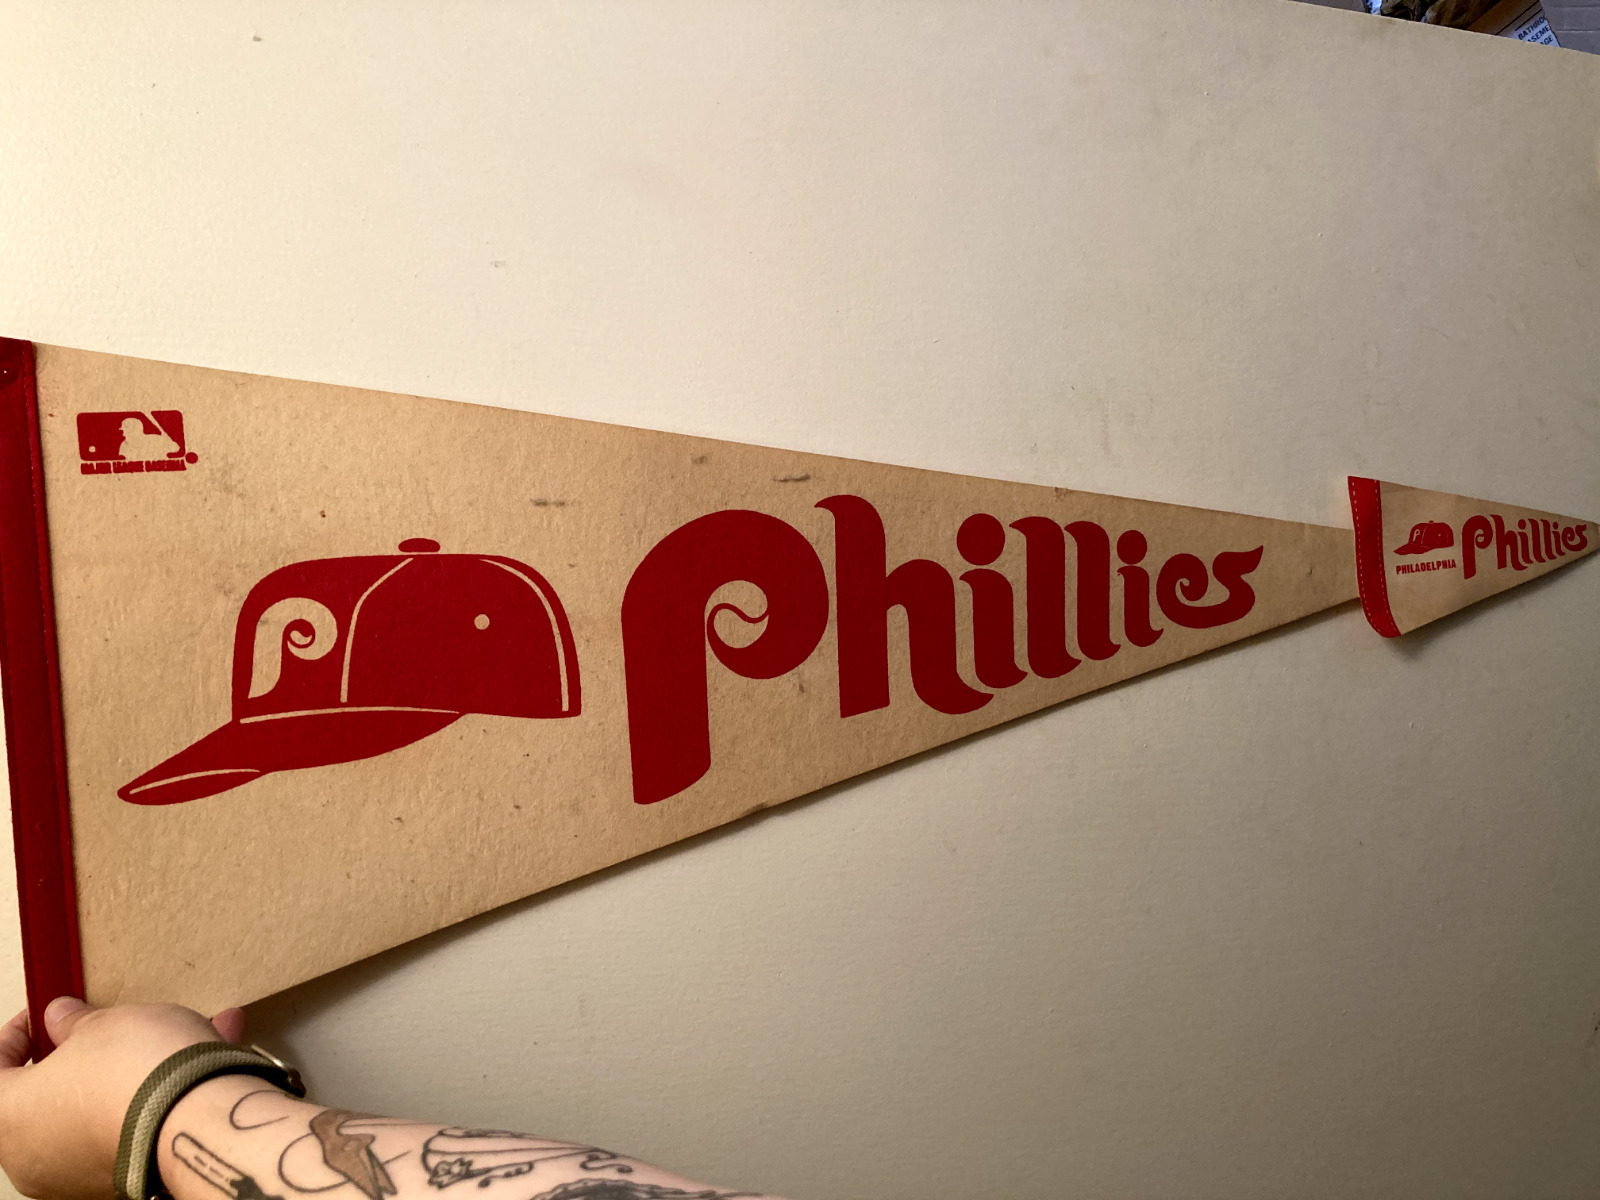  2 Vintage Philadelphia Phillies Pennant Flags